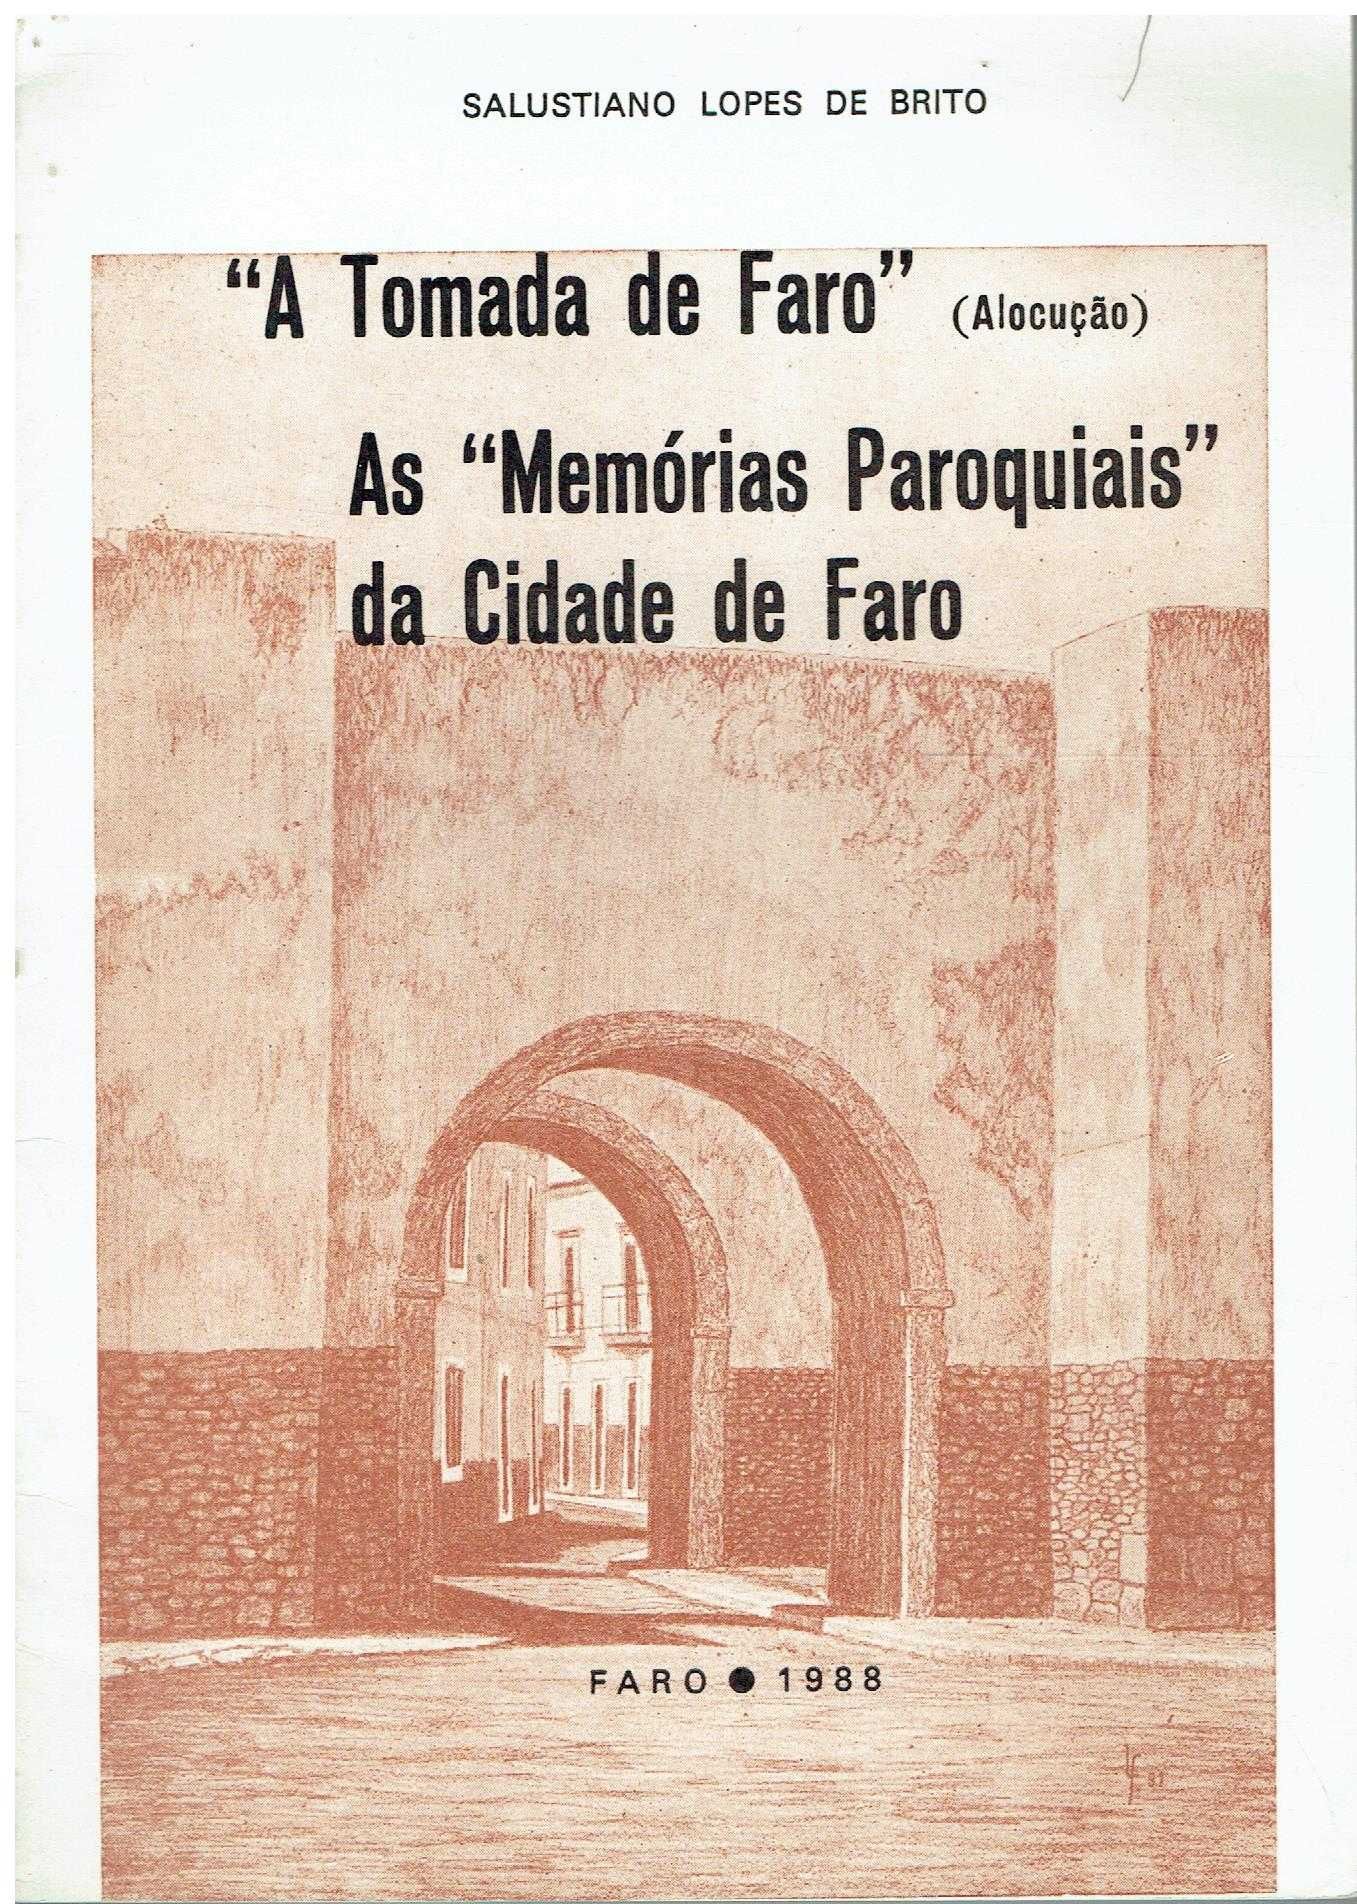 10619 - Livros sobre a região de Faro / 2